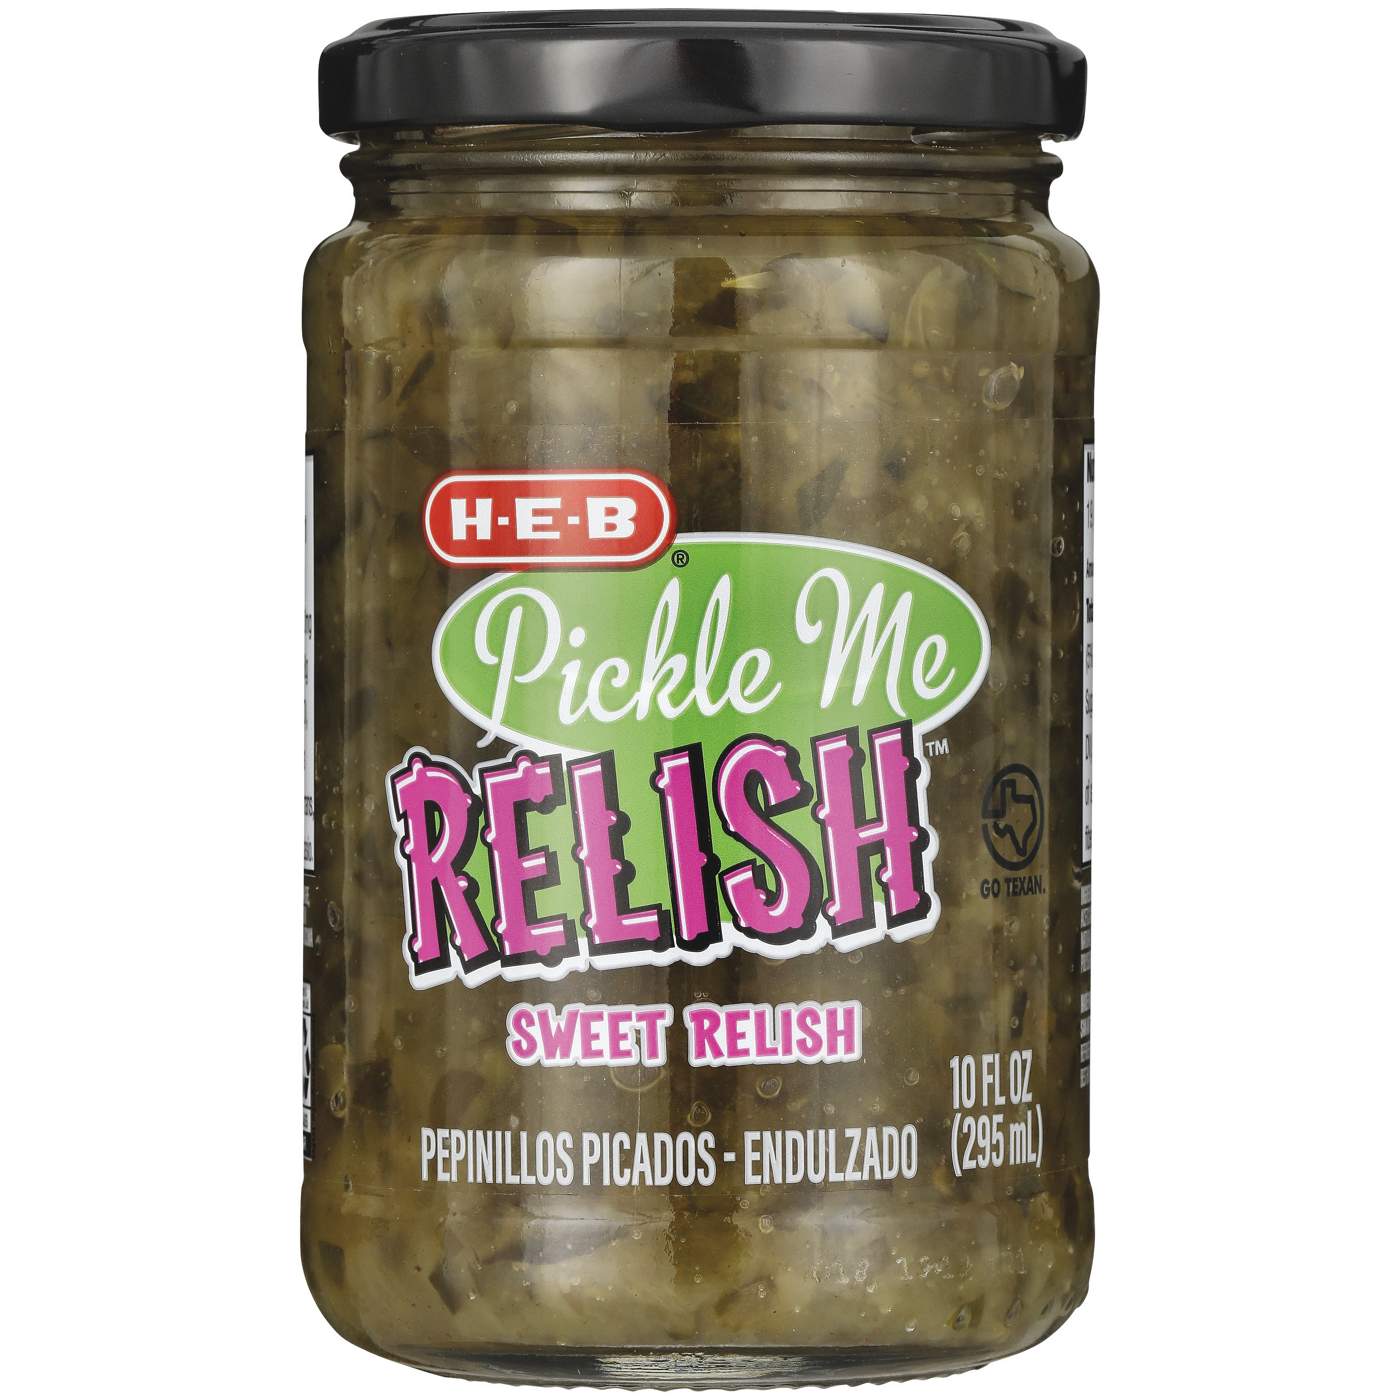 H-E-B Pickle Me Relish Sweet Relish; image 1 of 2